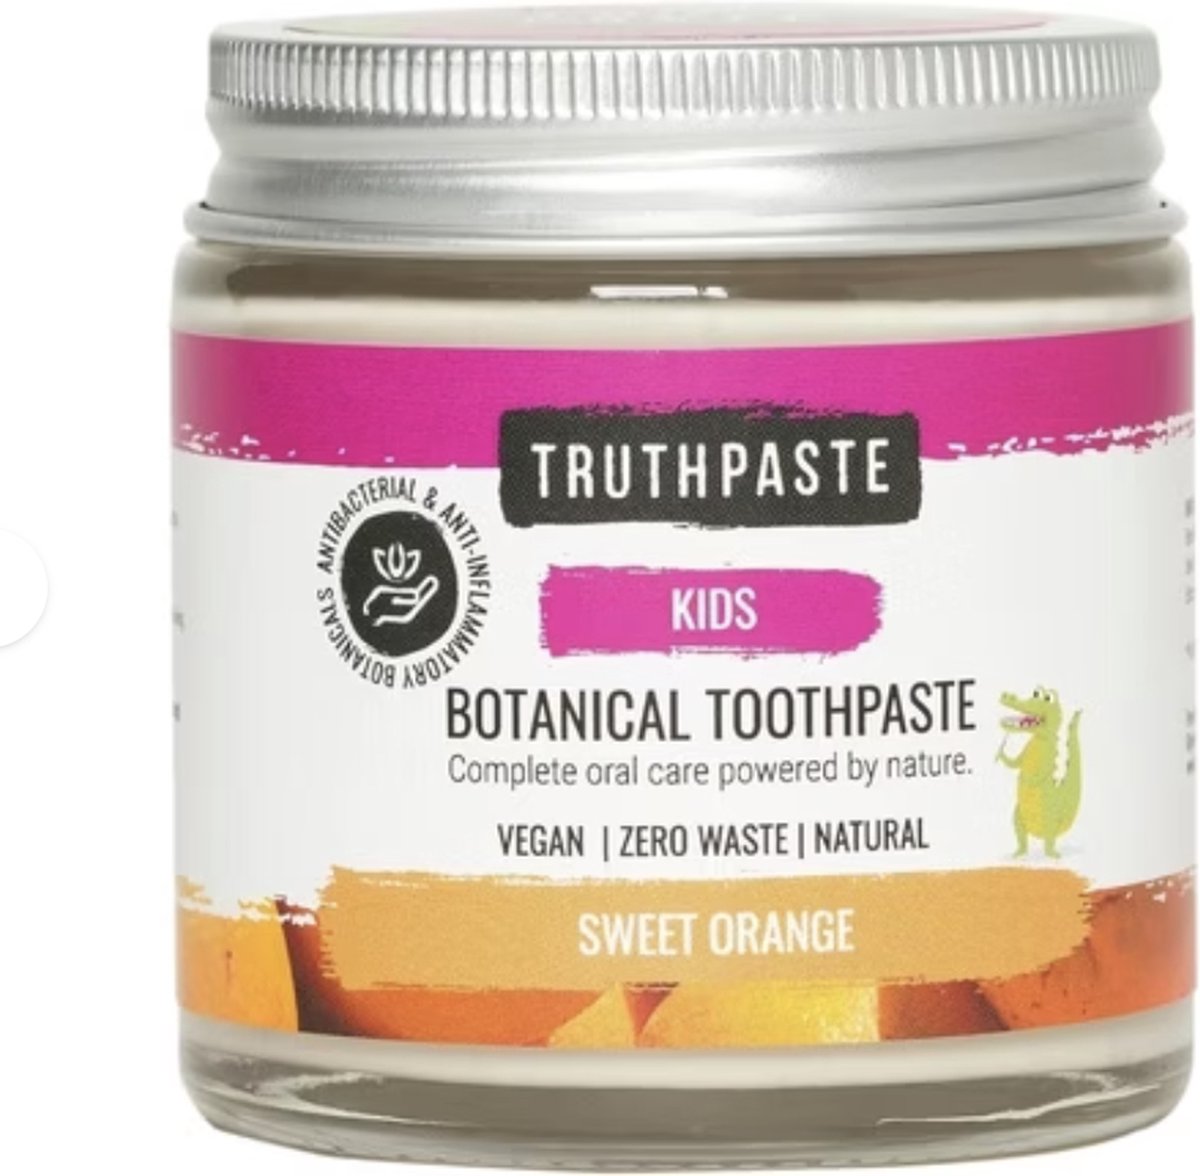 Kids Natuurlijke tandpasta Kids - Truthpaste Biologische & Organische tandpasta - 100 ml sweet orange - Zero Waste en Cruelty Free